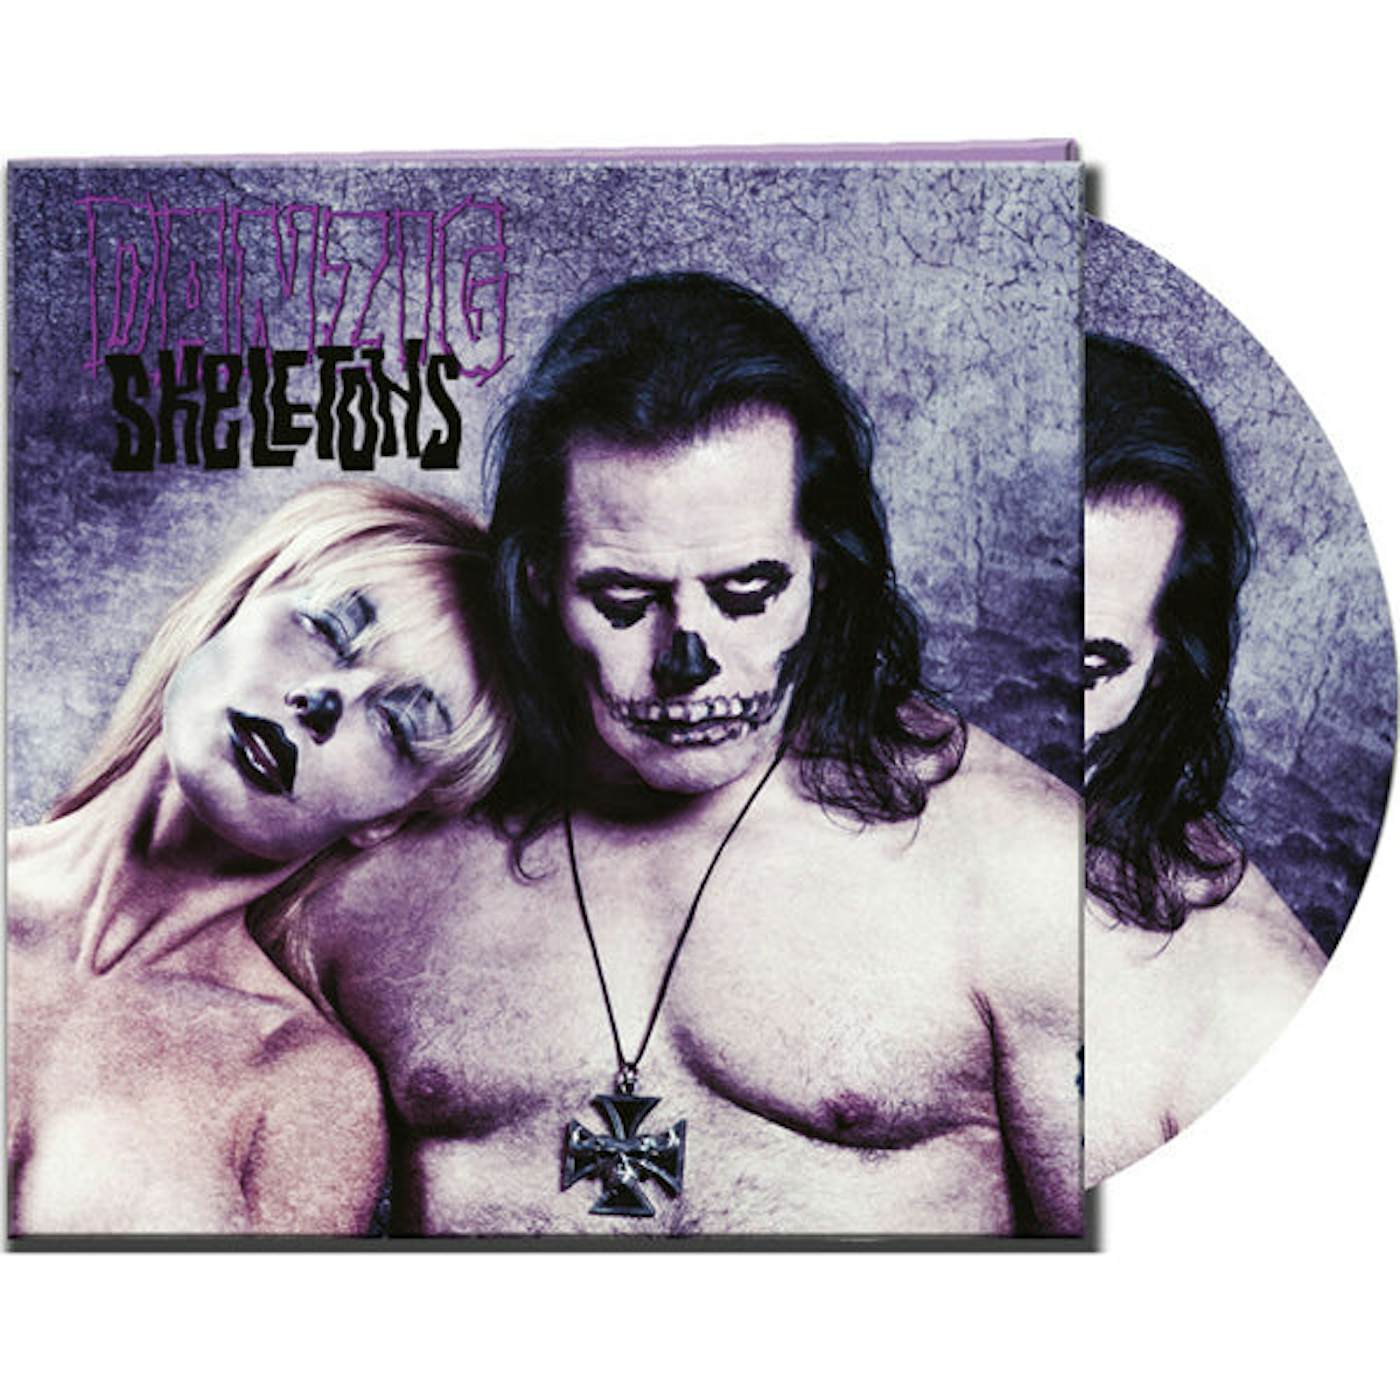 Danzig LP - Skeletons (Picture Disk) (Vinyl)